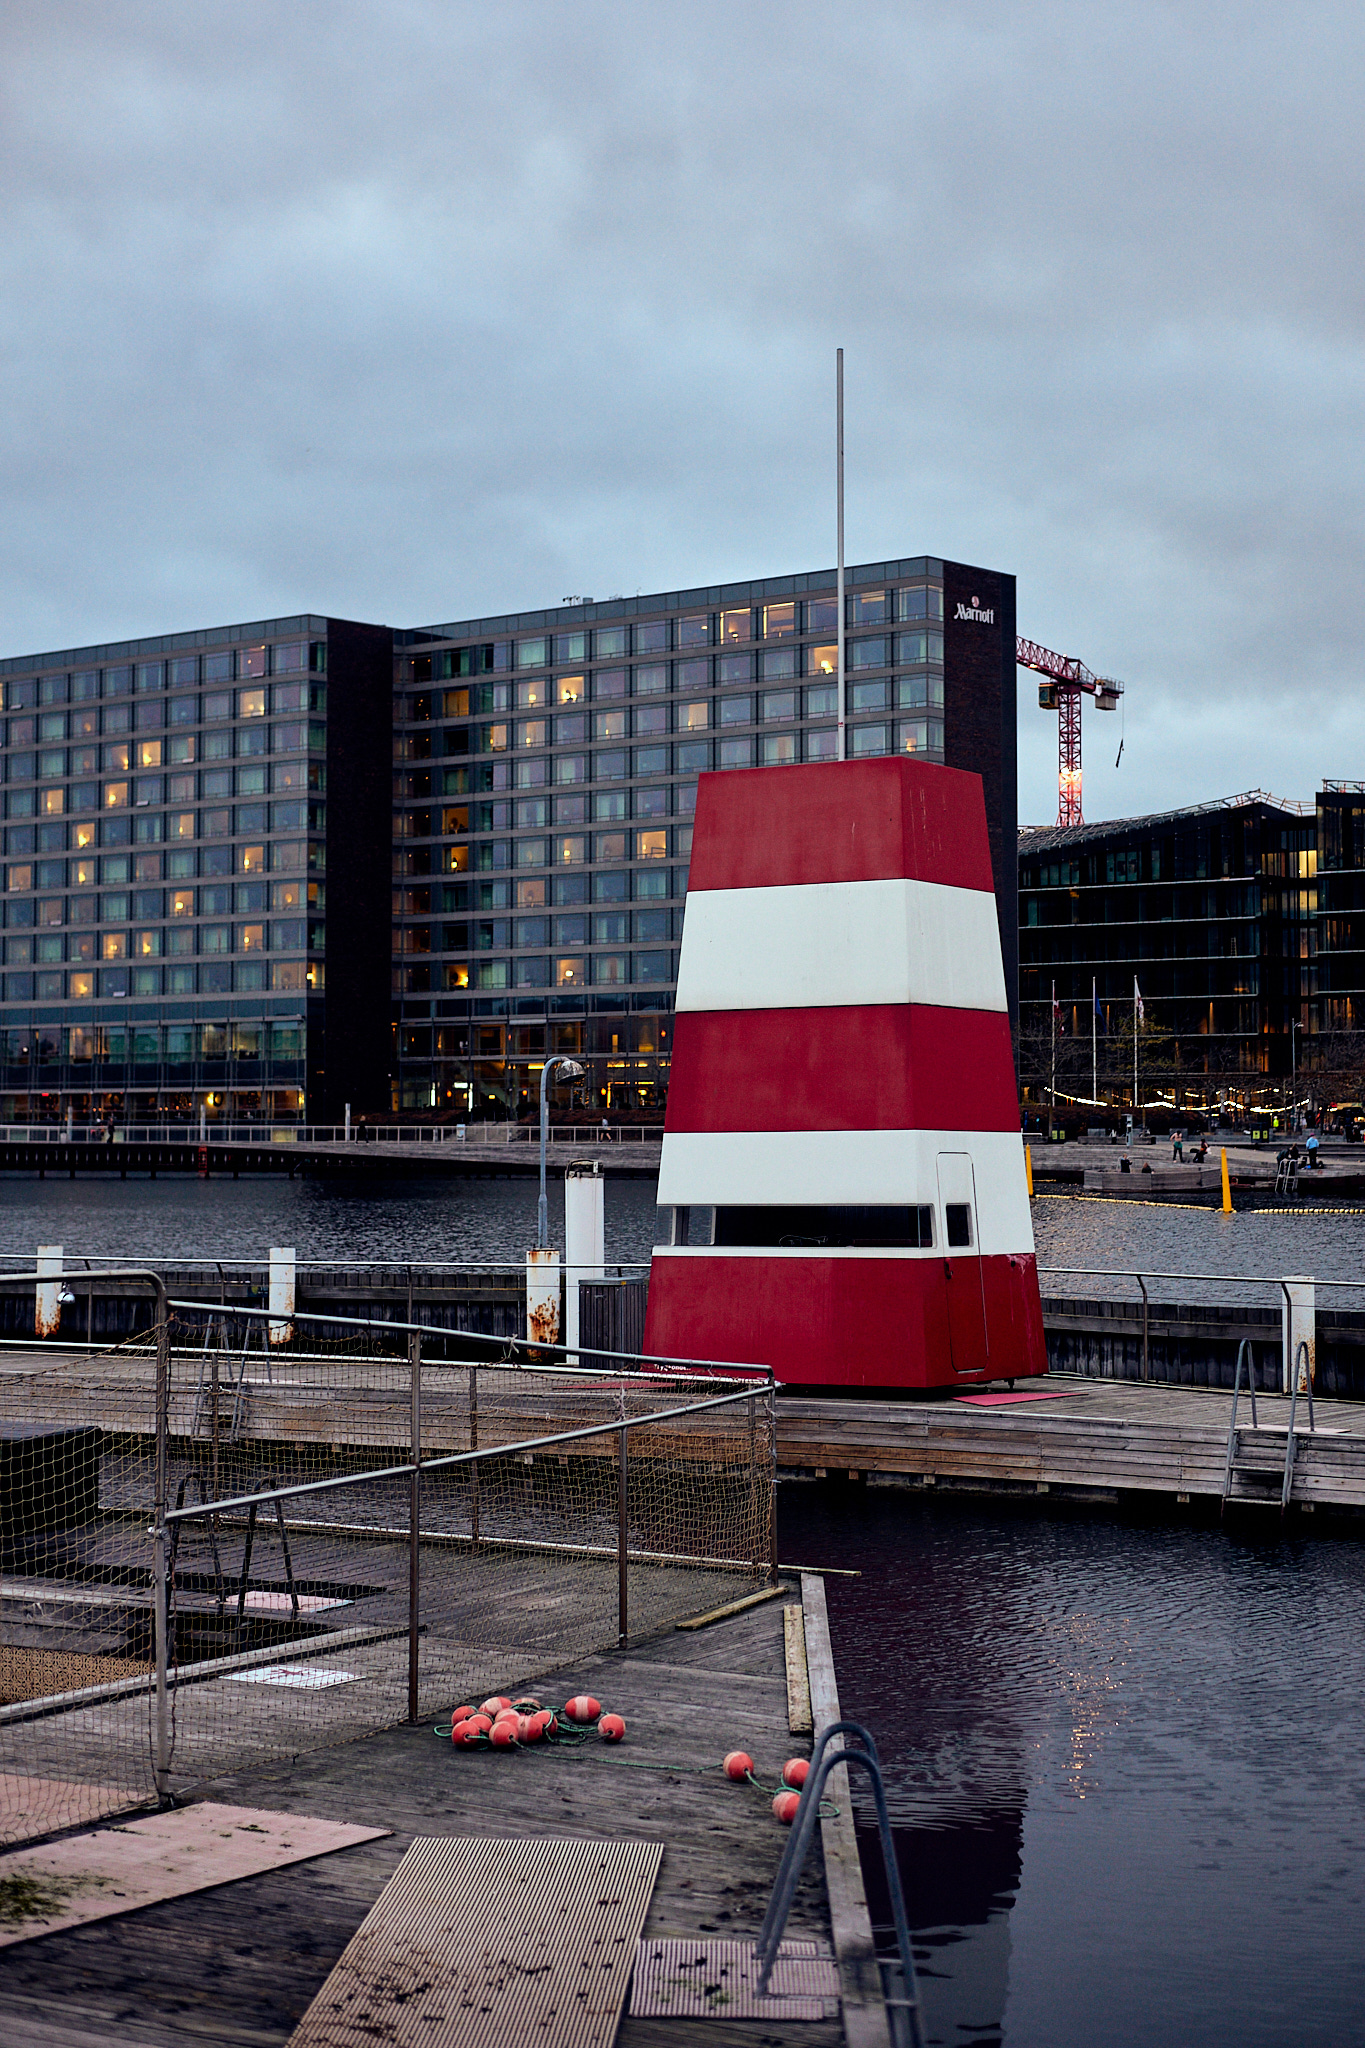 Tid til en svømmetur - havne badet i københavn